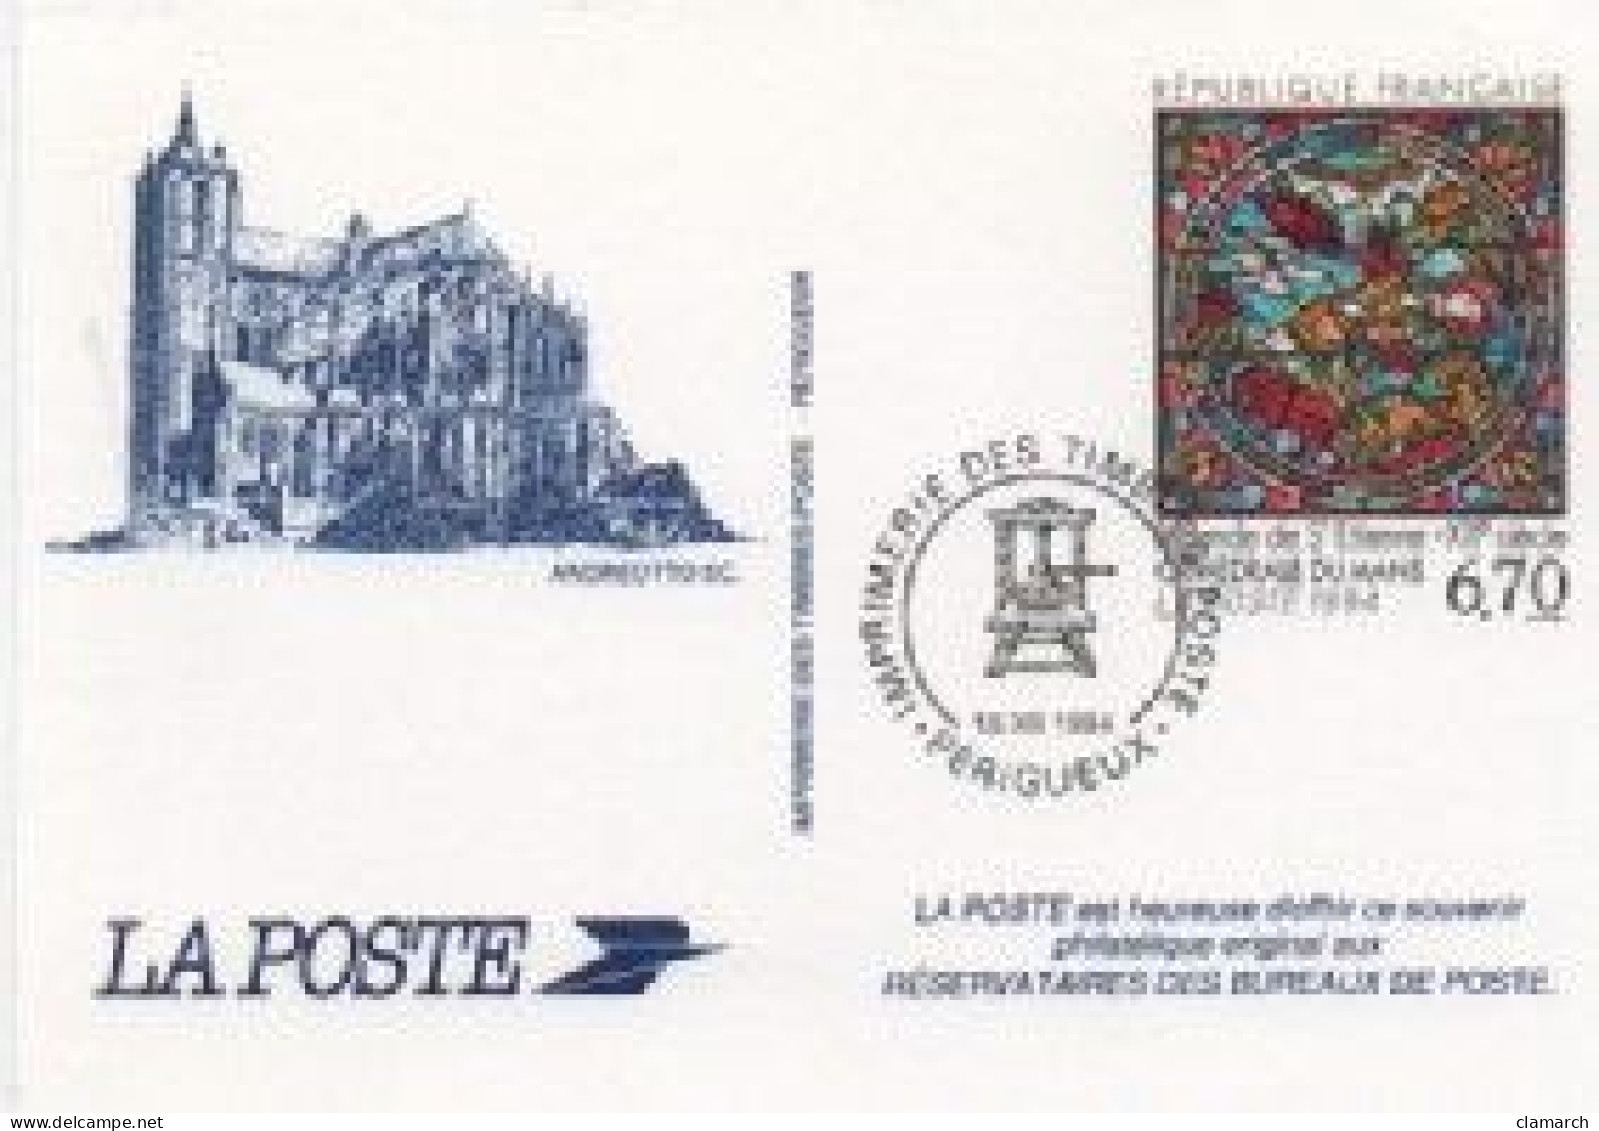 FRANCE-17 Cartes Souvenirs Philatéliques-frais D'envoi Pour La F 4.30 - Documents Of Postal Services